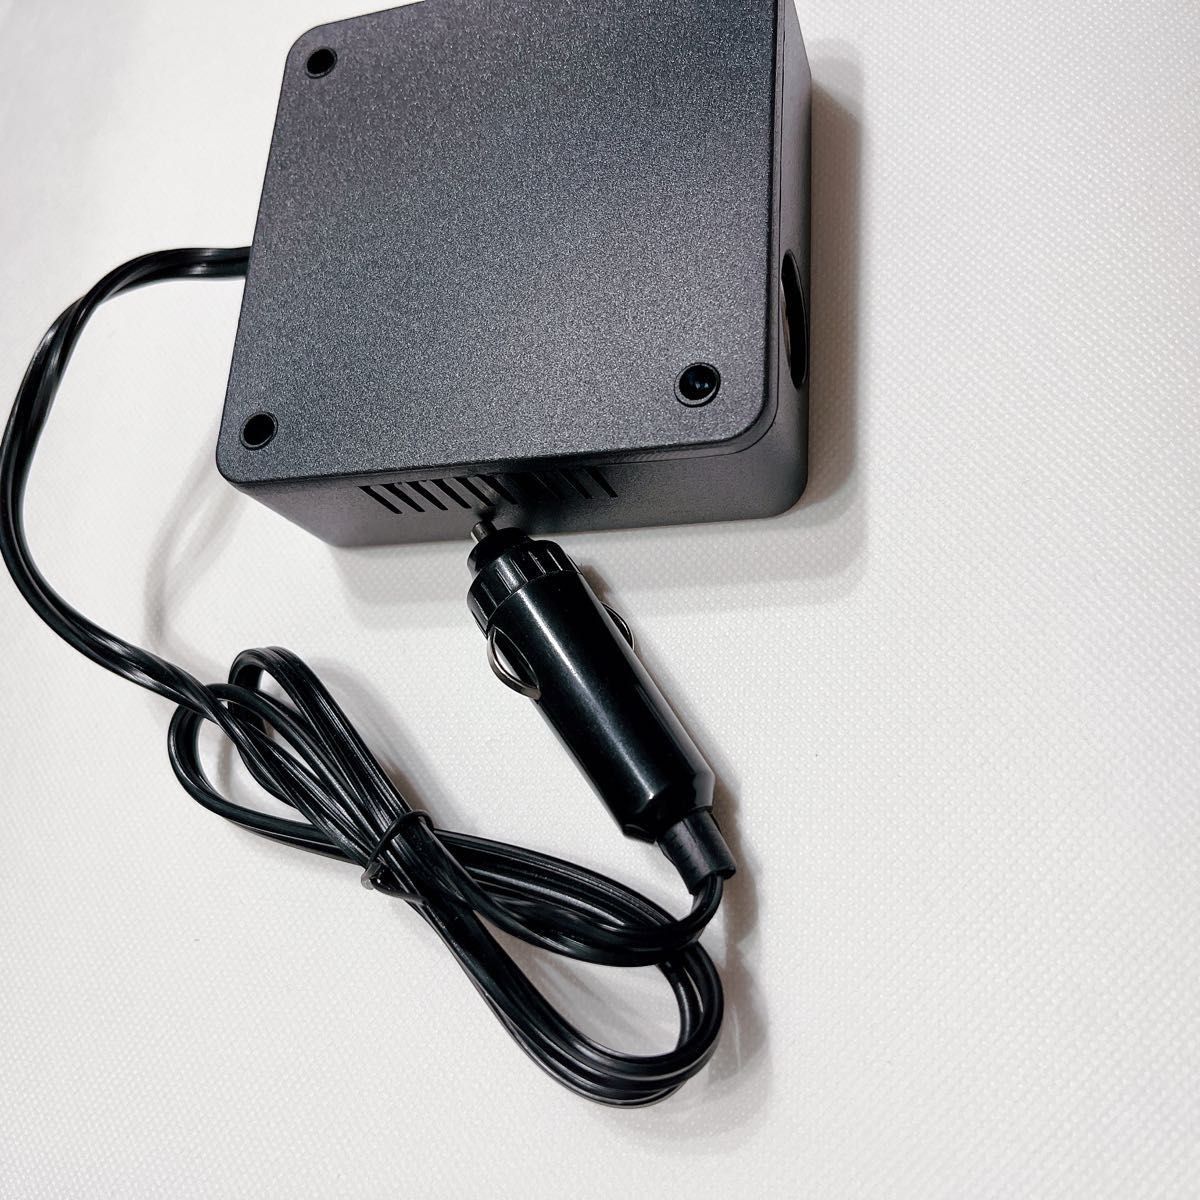  инвертер 12V24V совместного пользования USB прикуриватель розетка внезапный скорость зарядка изменение 